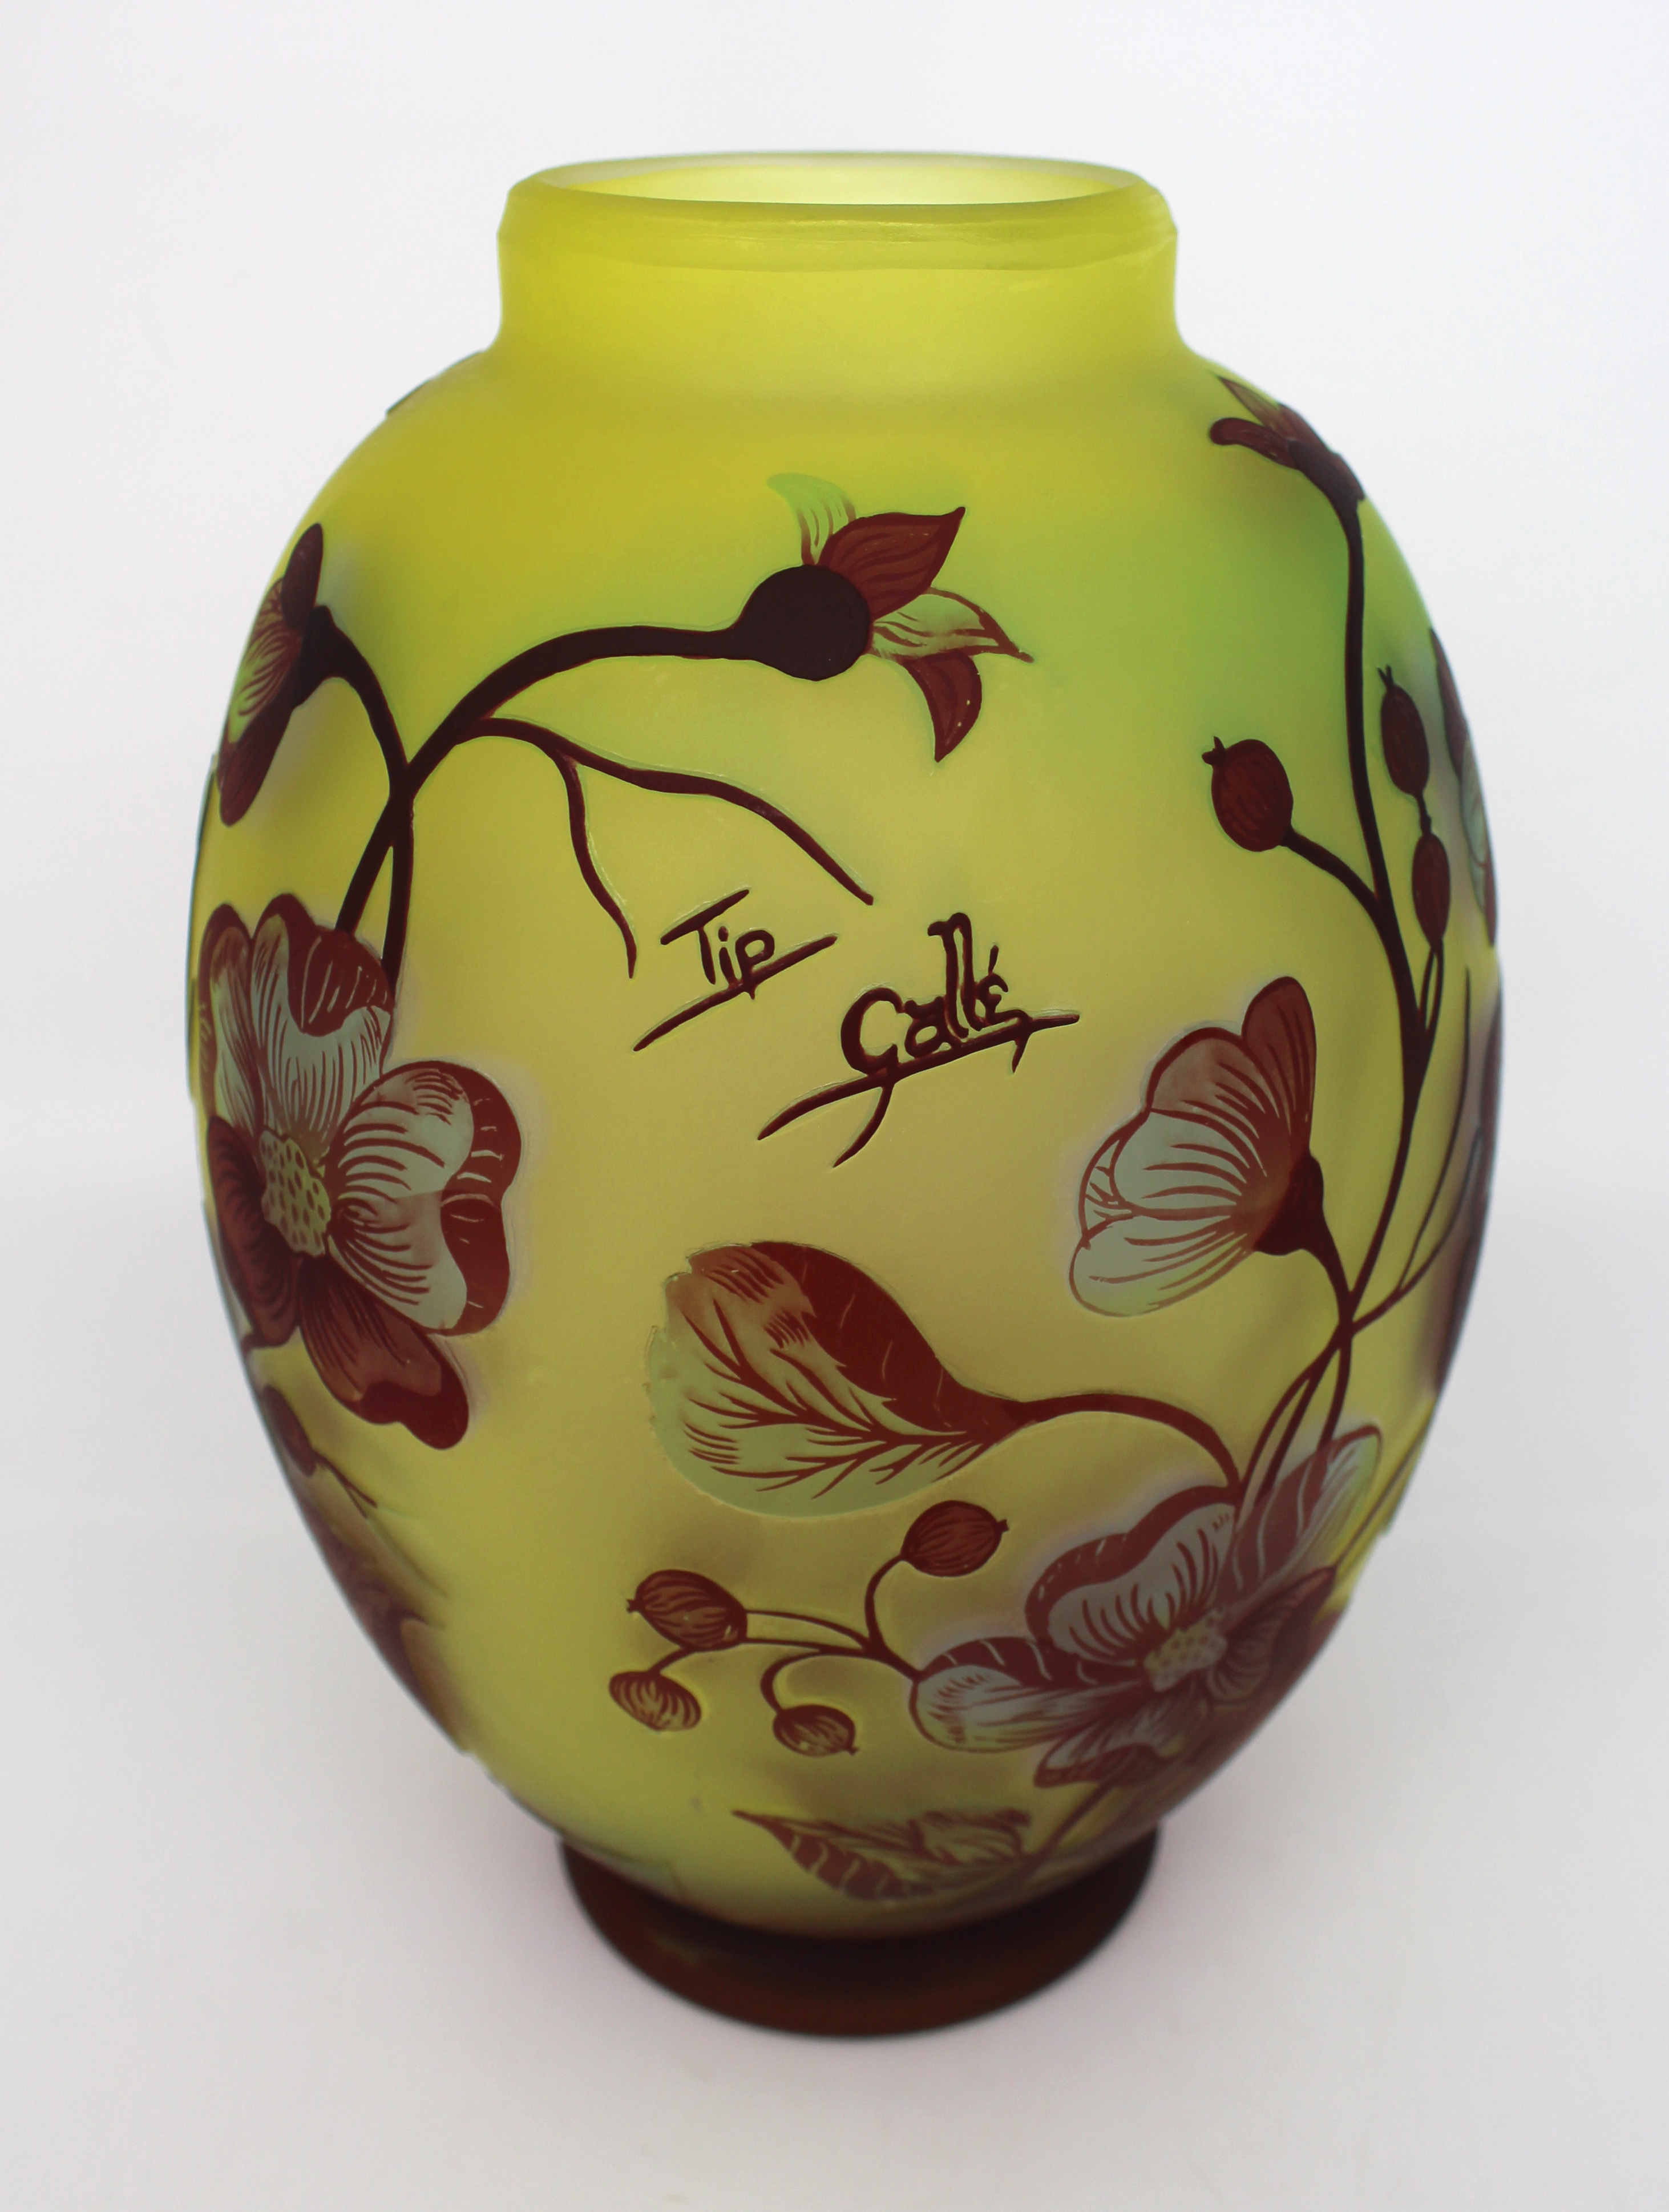 Tip Gallé Art Nouveau Style Vase - Image 6 of 6